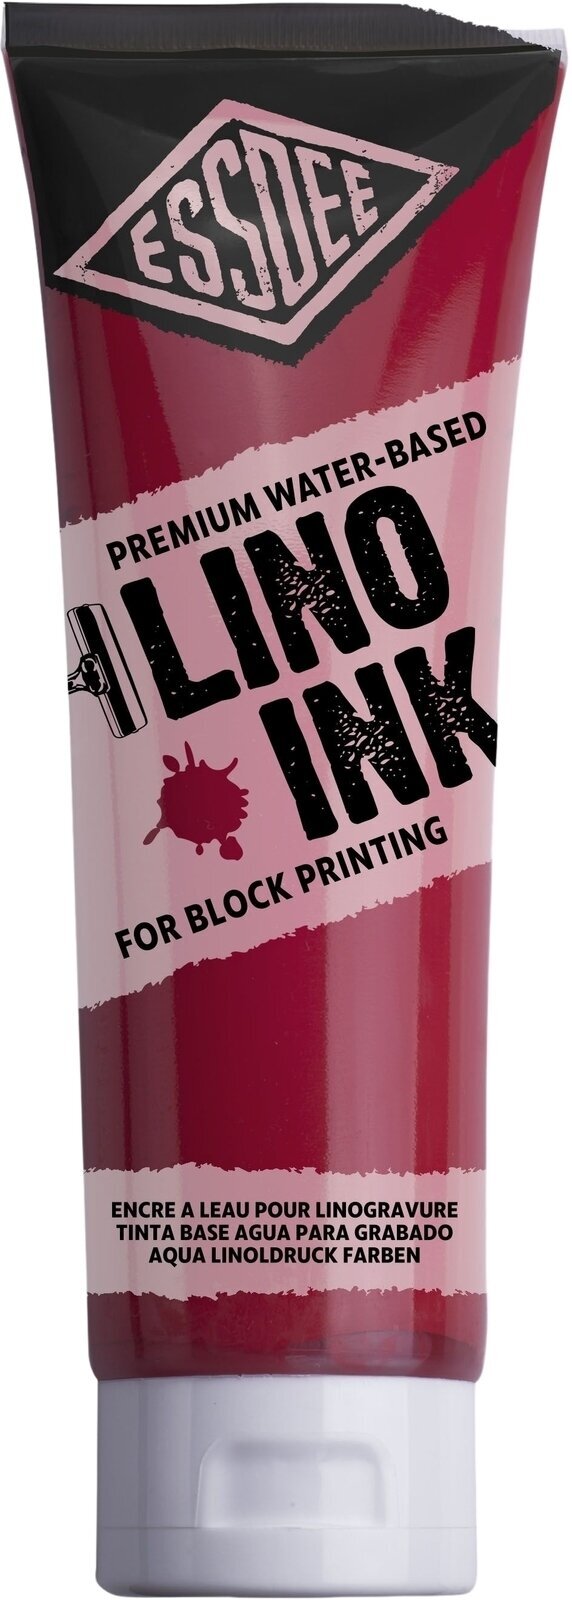 Barva na linoryt Essdee Block Printing Ink Barva na linoryt Brilliant Red (Scarlet) 300 ml